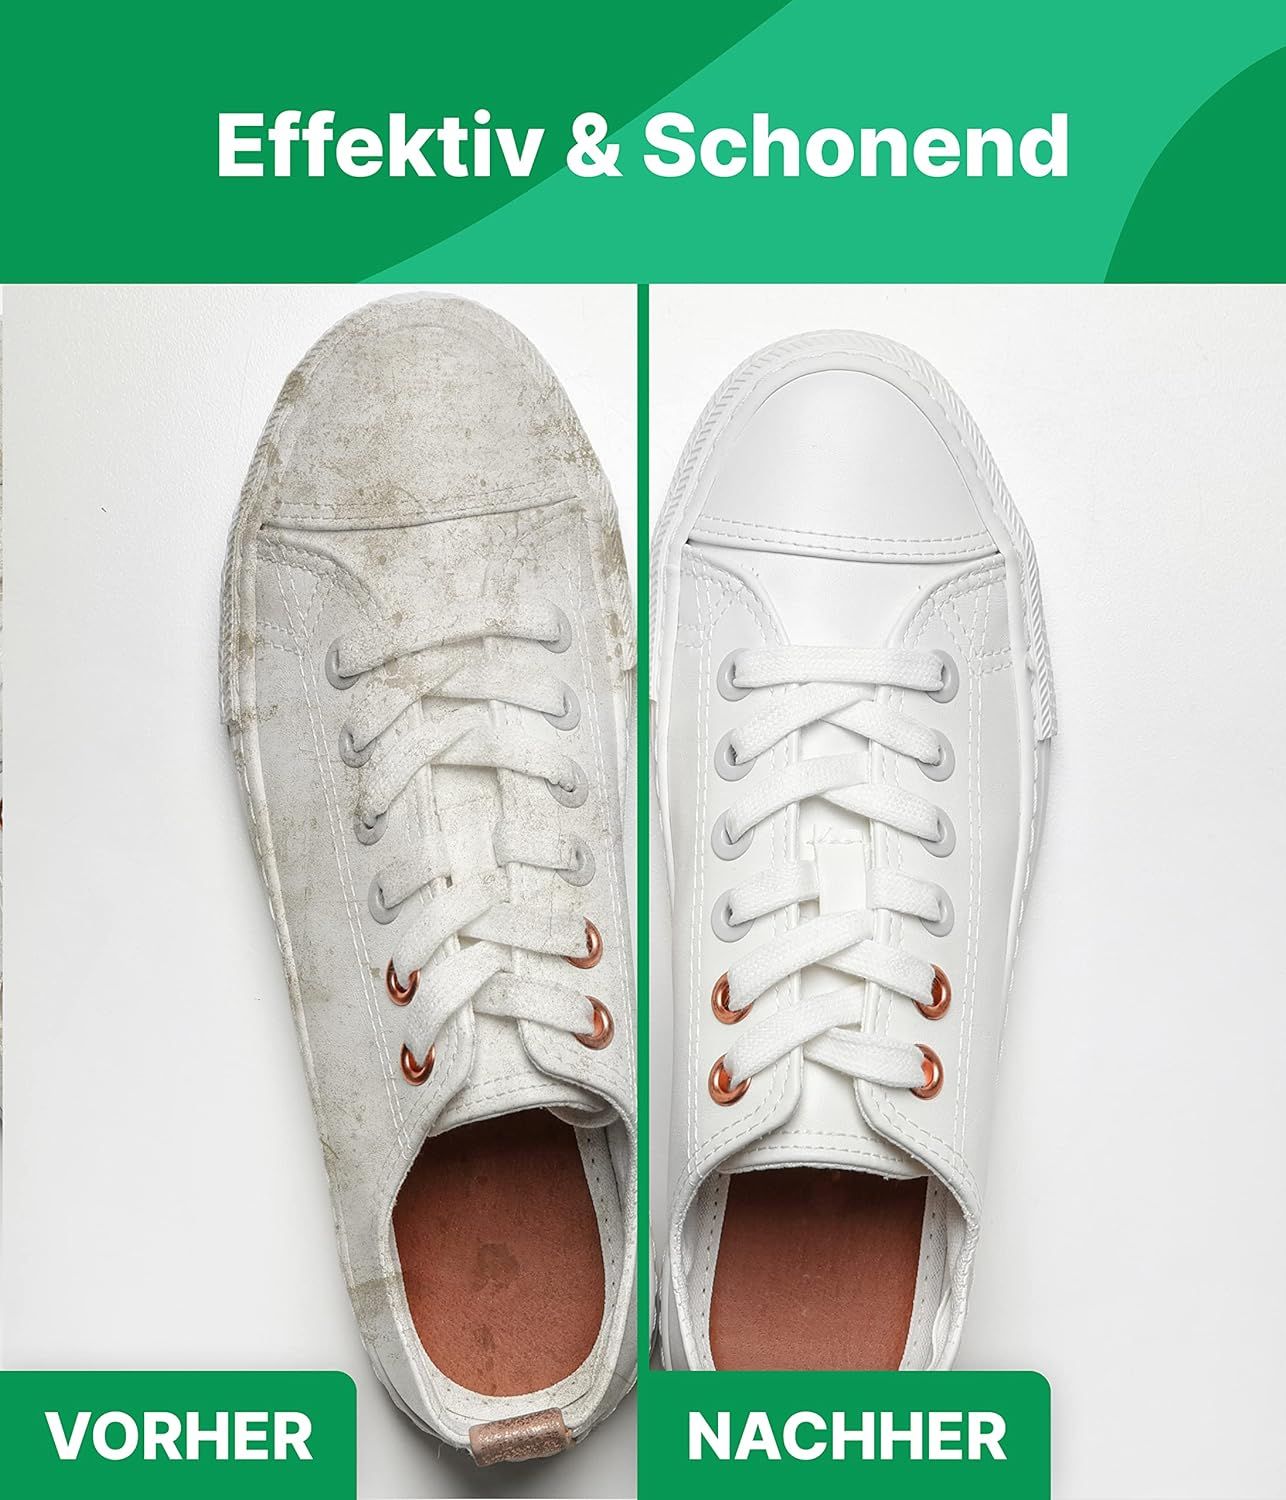 Emma Grün® Sneaker-Reinigungsset mit Putzmittel & Premium Schuhwachs inkl. Schwamm & Schuhbürste